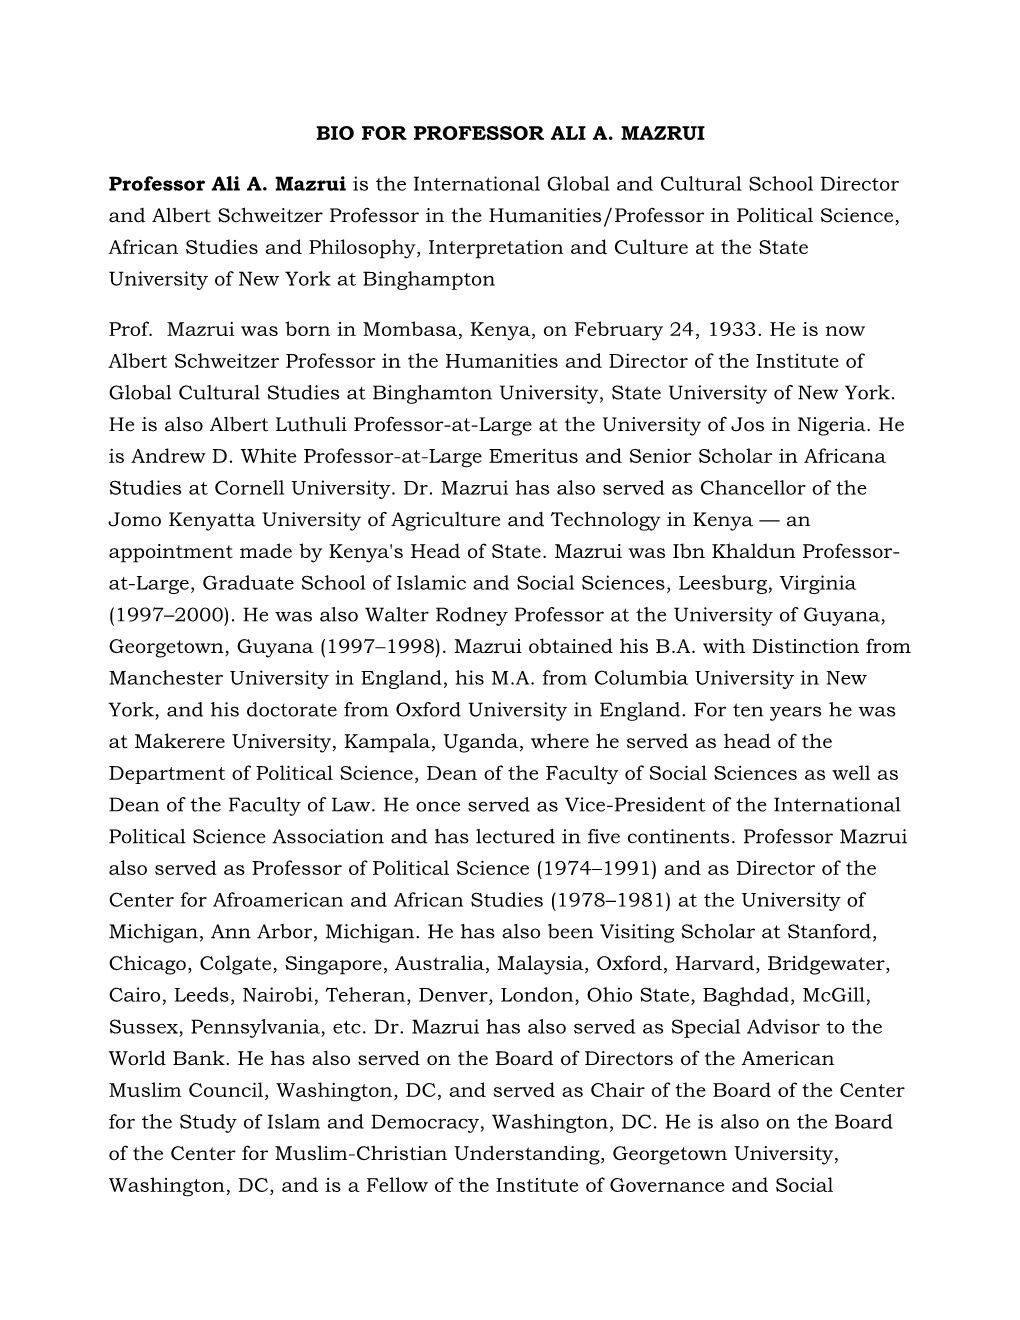 Prof. Ali Mazrui Biography.Pdf